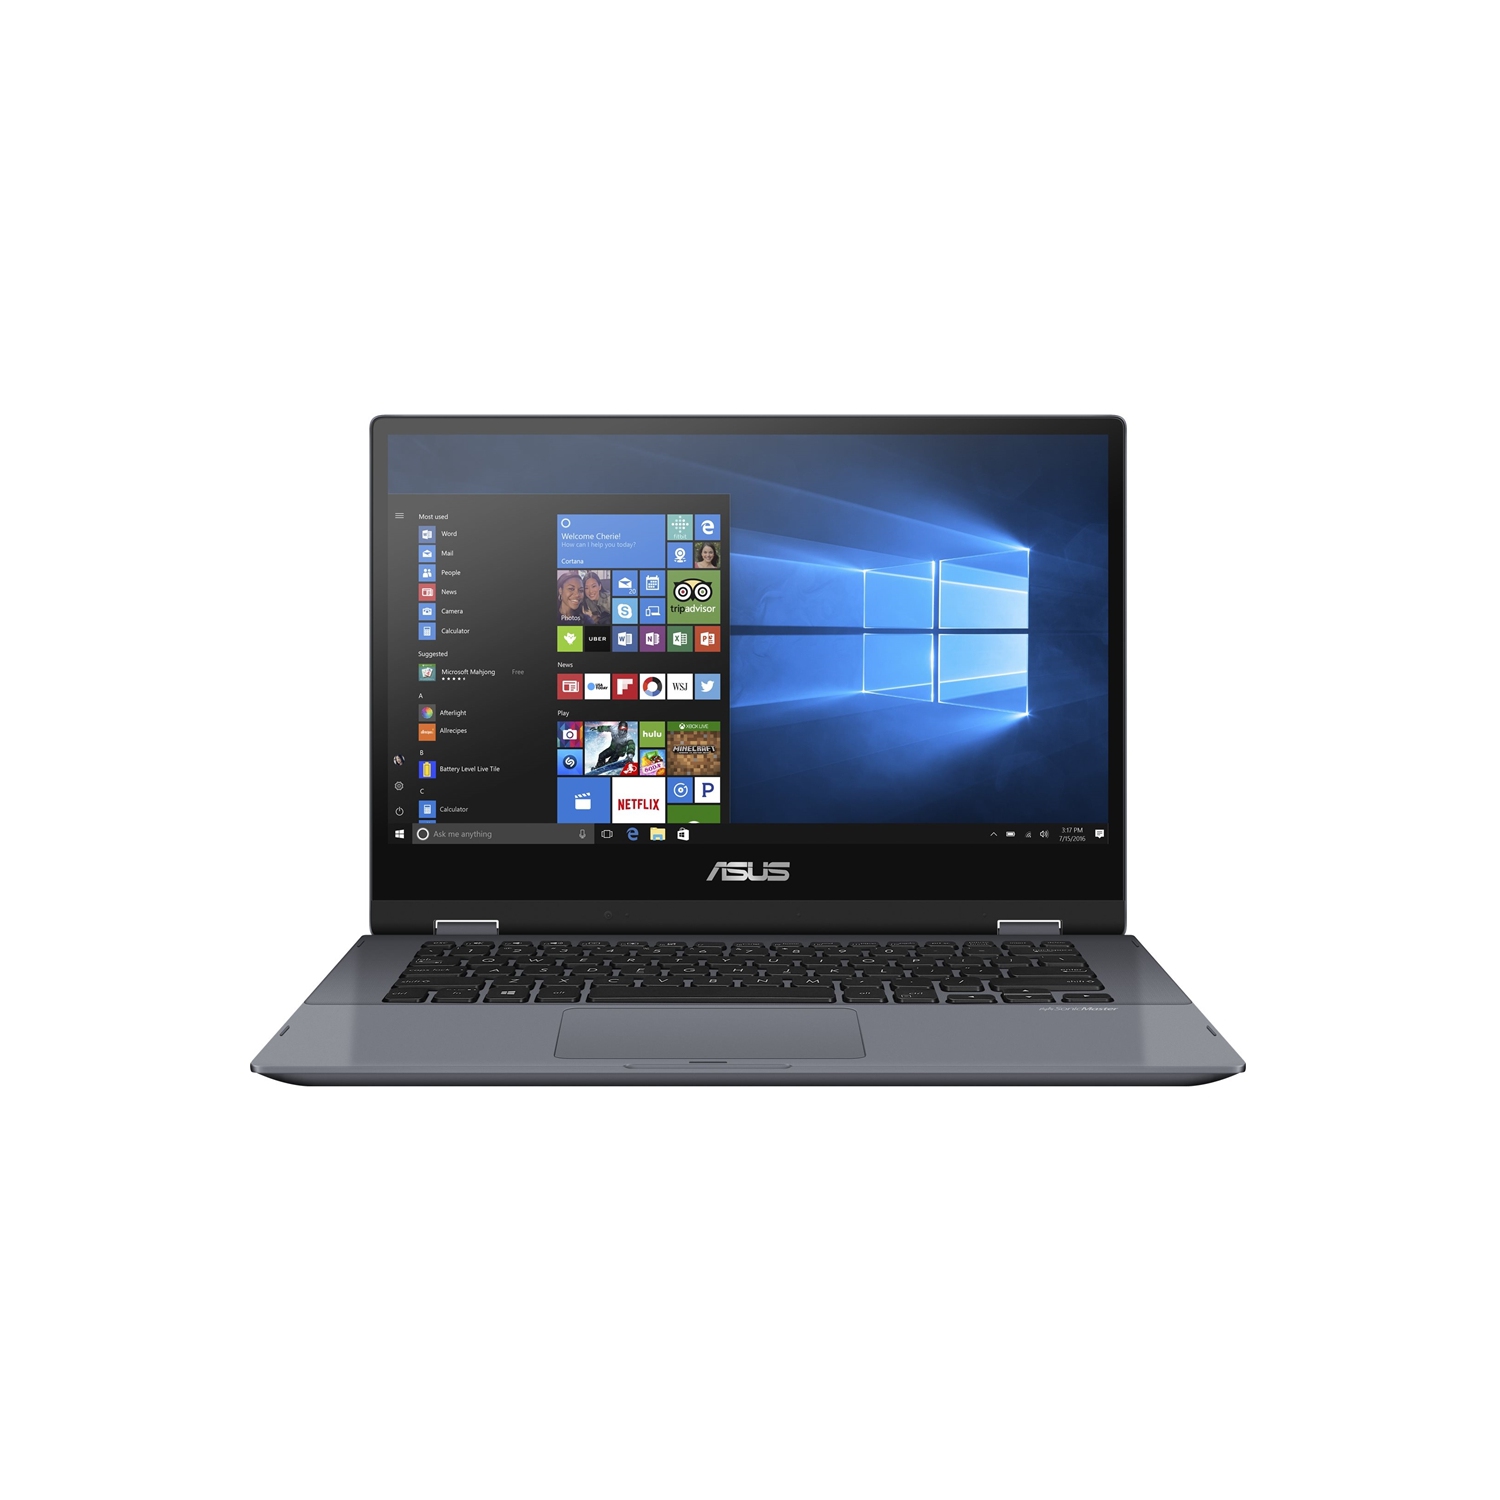 Asus Vivobook Flip 14" 2-in-1 Laptop - Grey - (Intel Core-i7 8565U / 512GB SSD / 8GB RAM / Windows 10) - (TP412FA-DB72T)